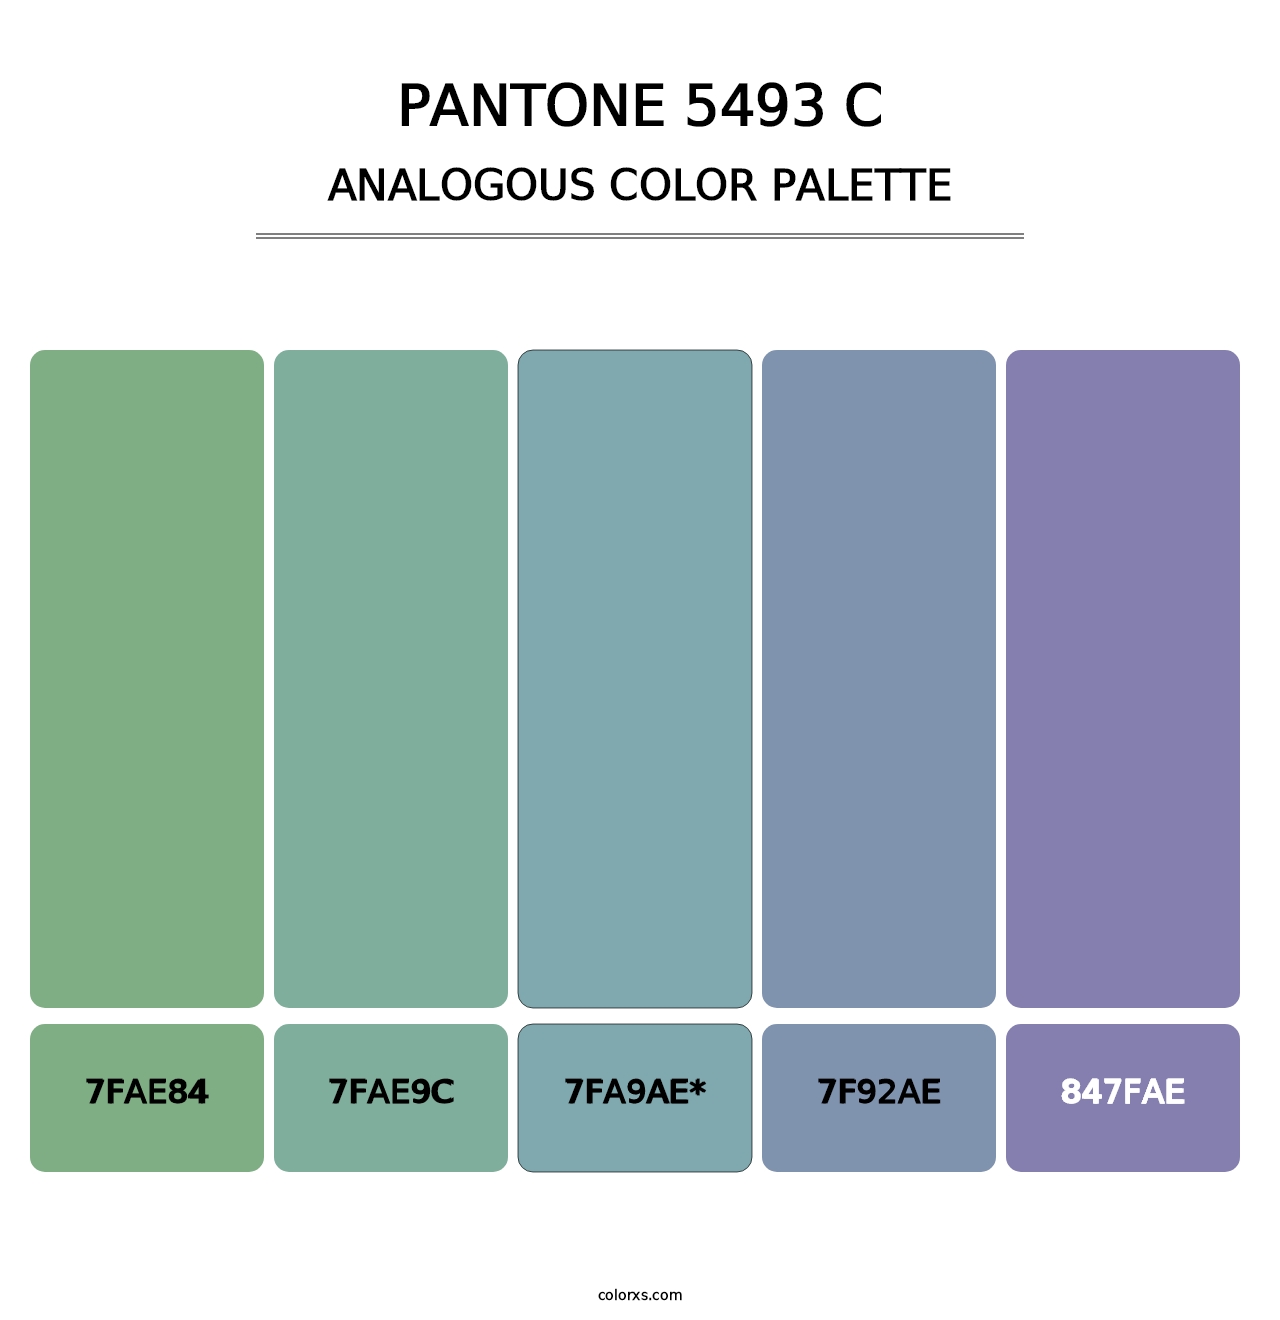 PANTONE 5493 C - Analogous Color Palette